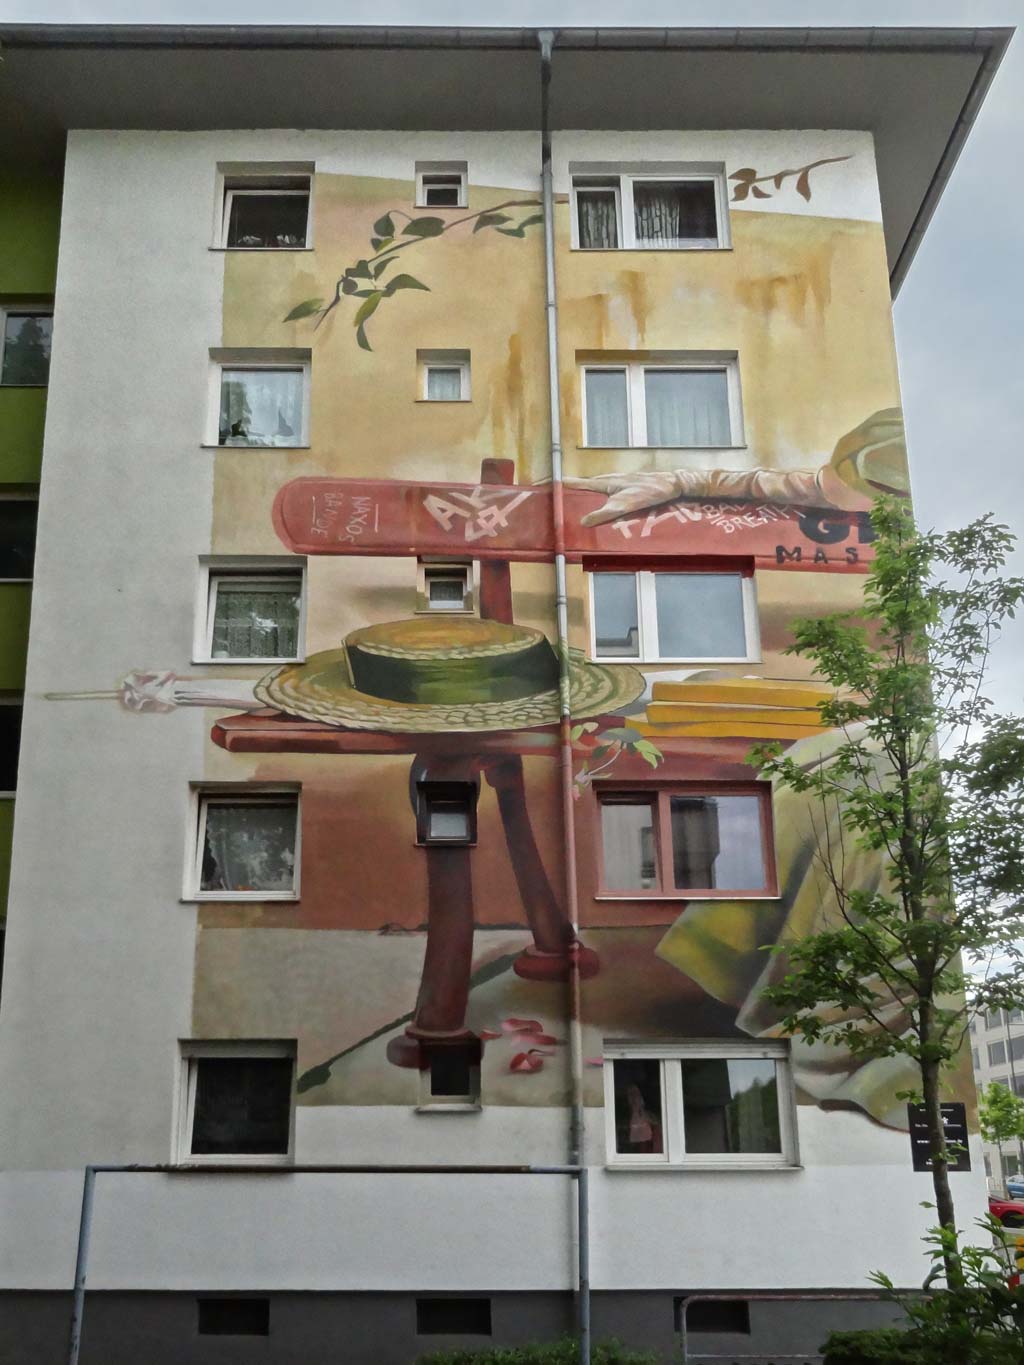 Frau sitzt auf Bank - Großes Graffiti-Wandbild in Offenbach